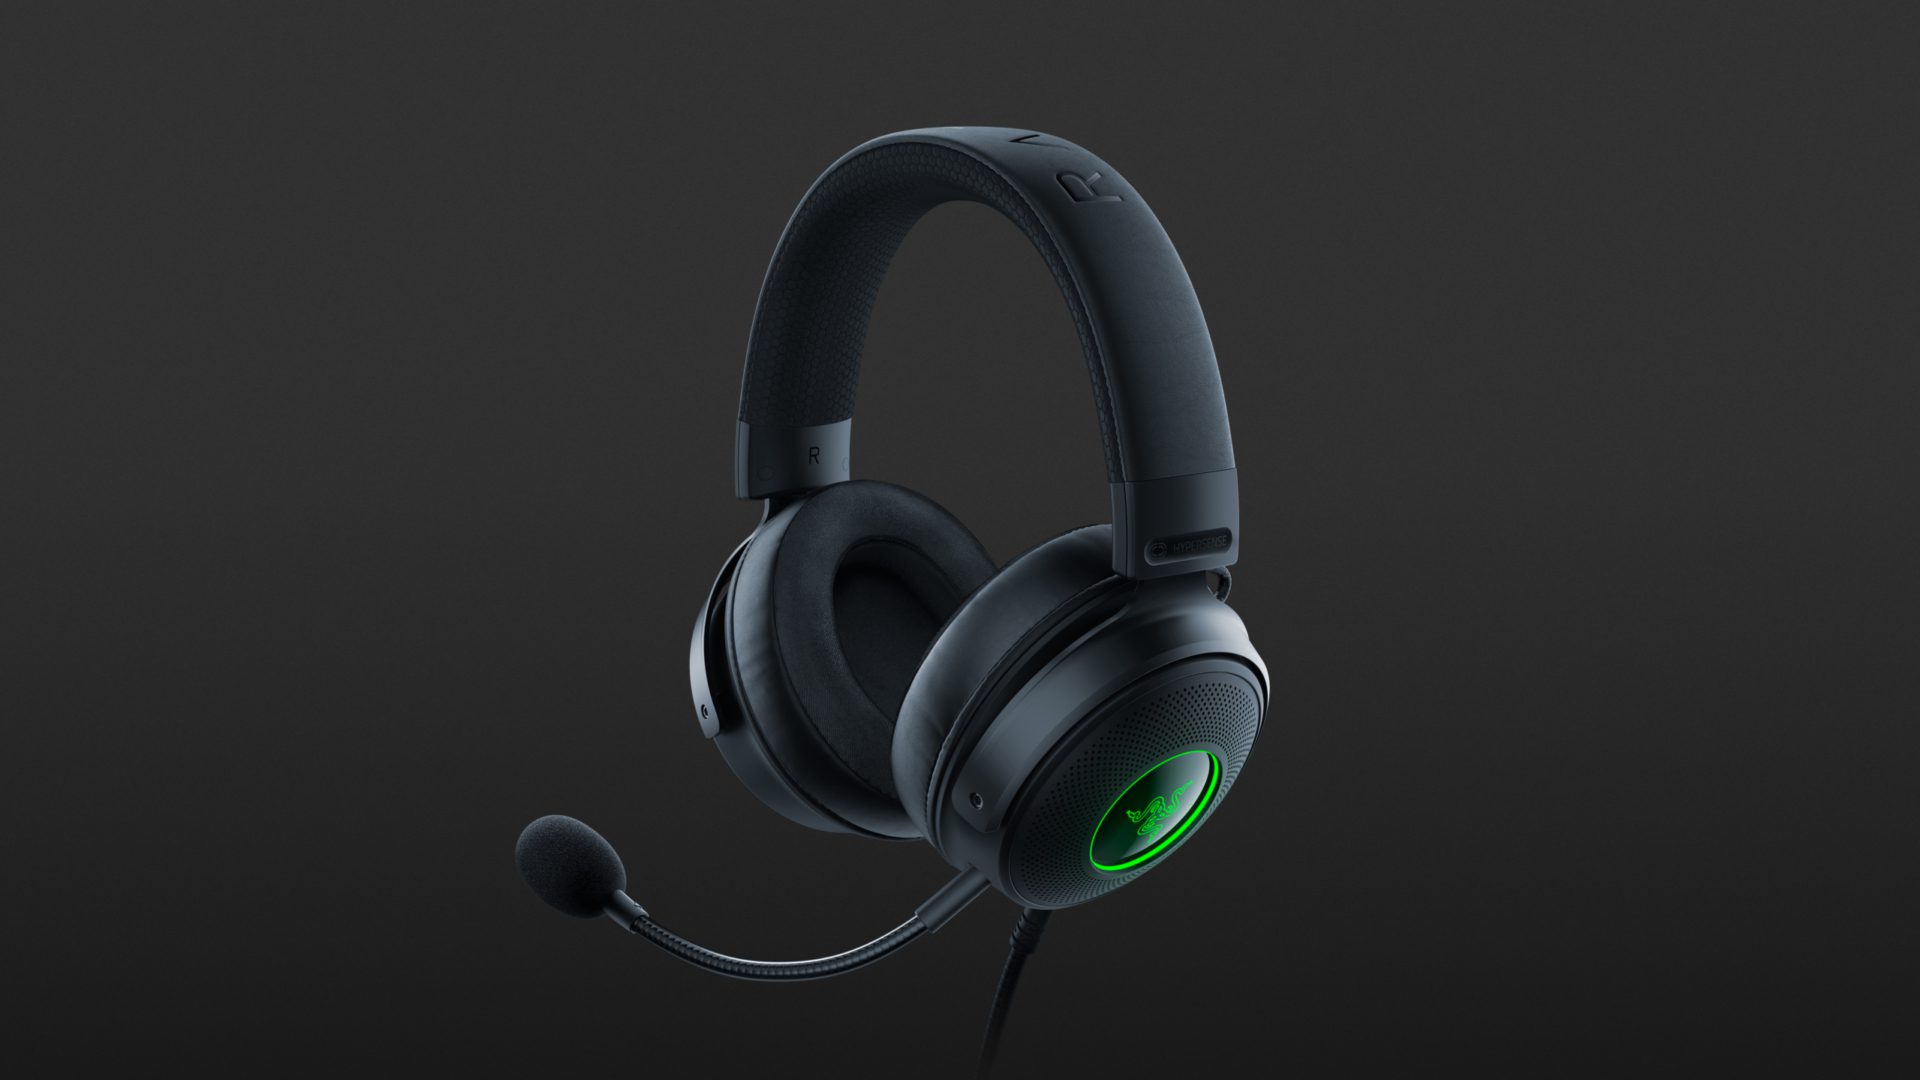 Razer's new Kraken gaming headsets bring controller-like